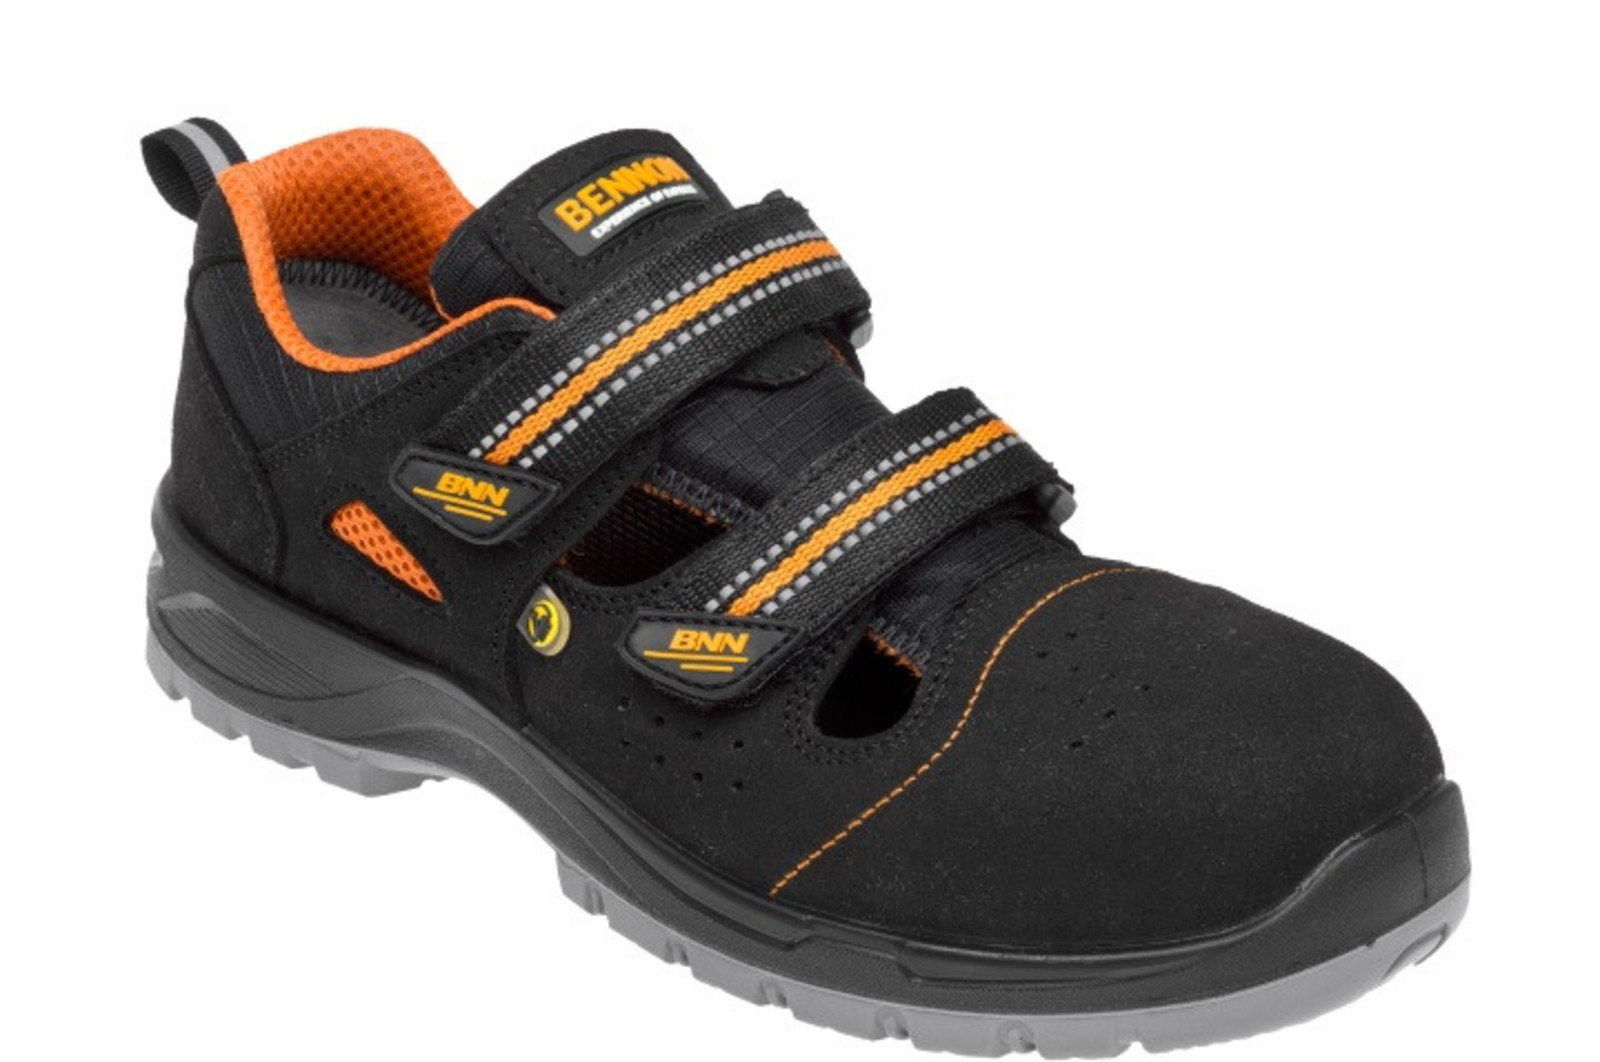 Bezpečnostné sandále Bennon Nux S1P ESD metal free - veľkosť: 48, farba: čierna